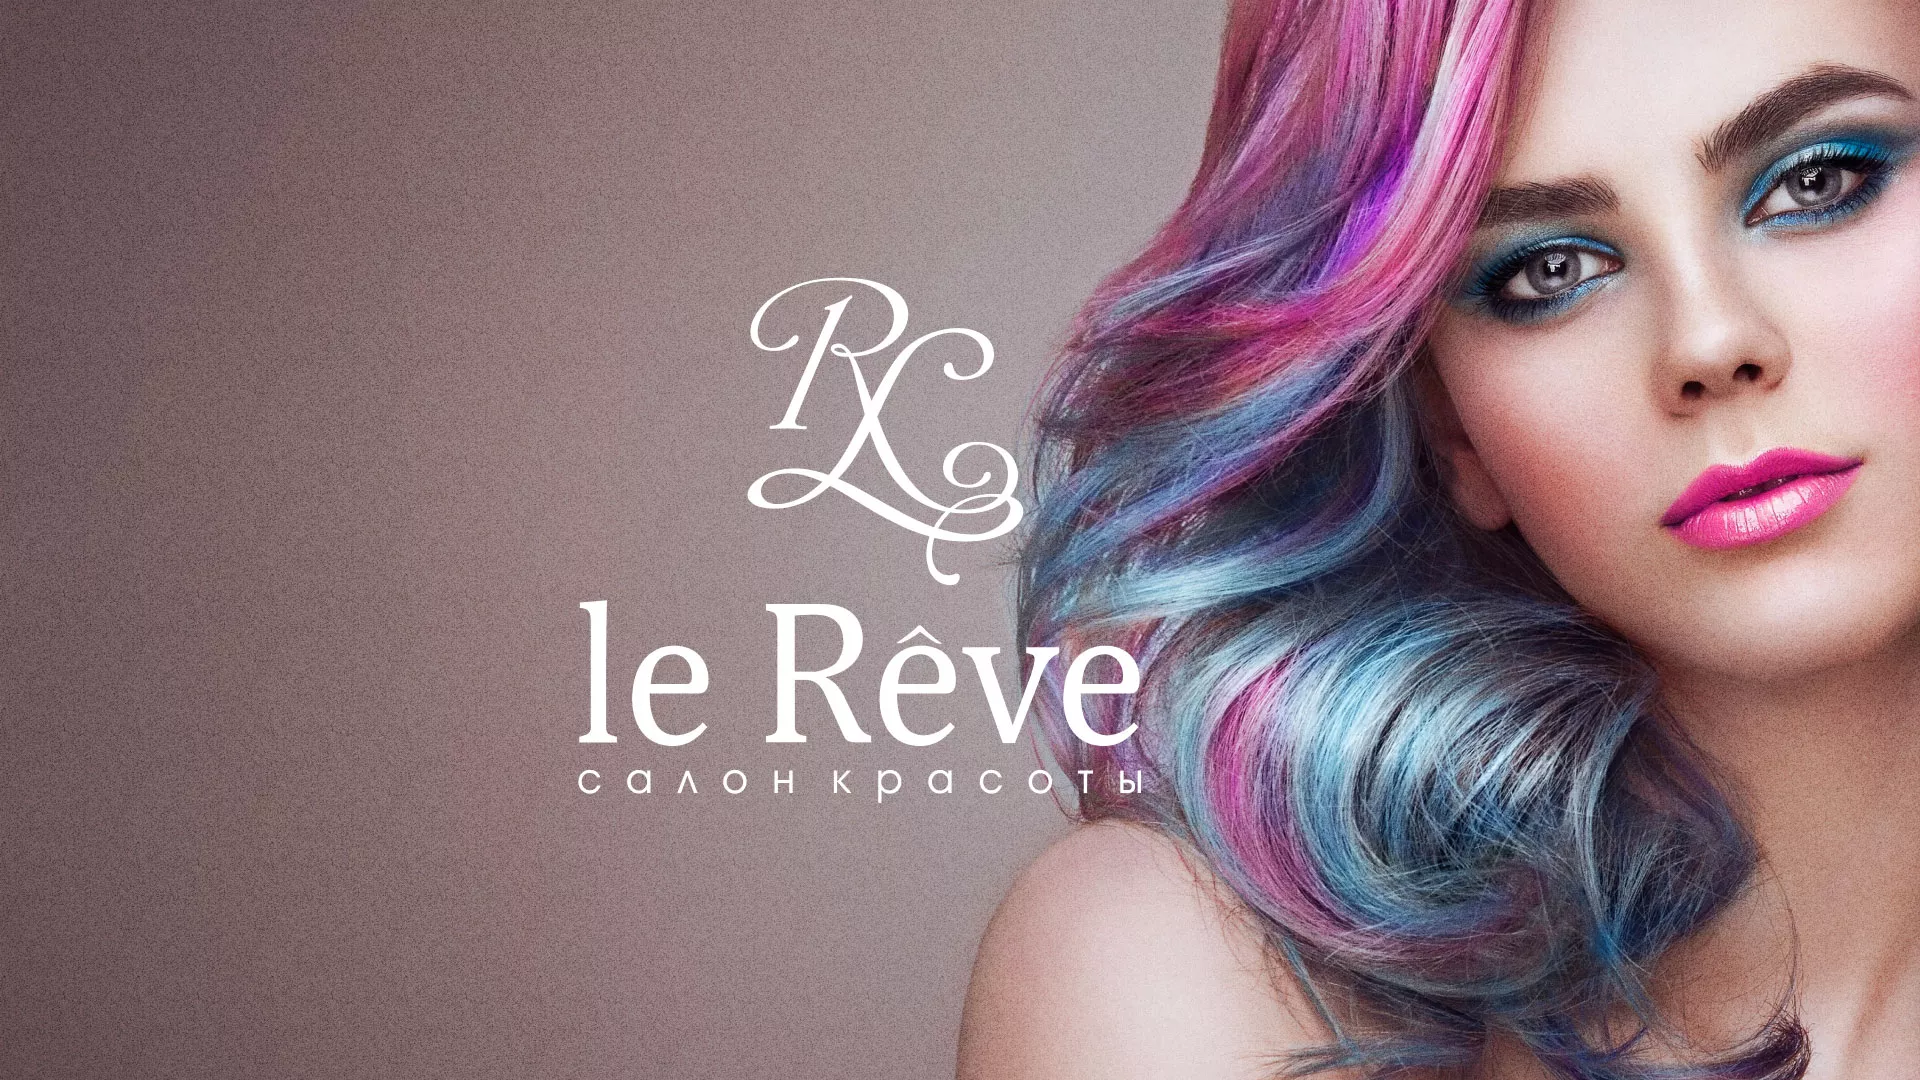 Создание сайта для салона красоты «Le Reve» в Мамоново